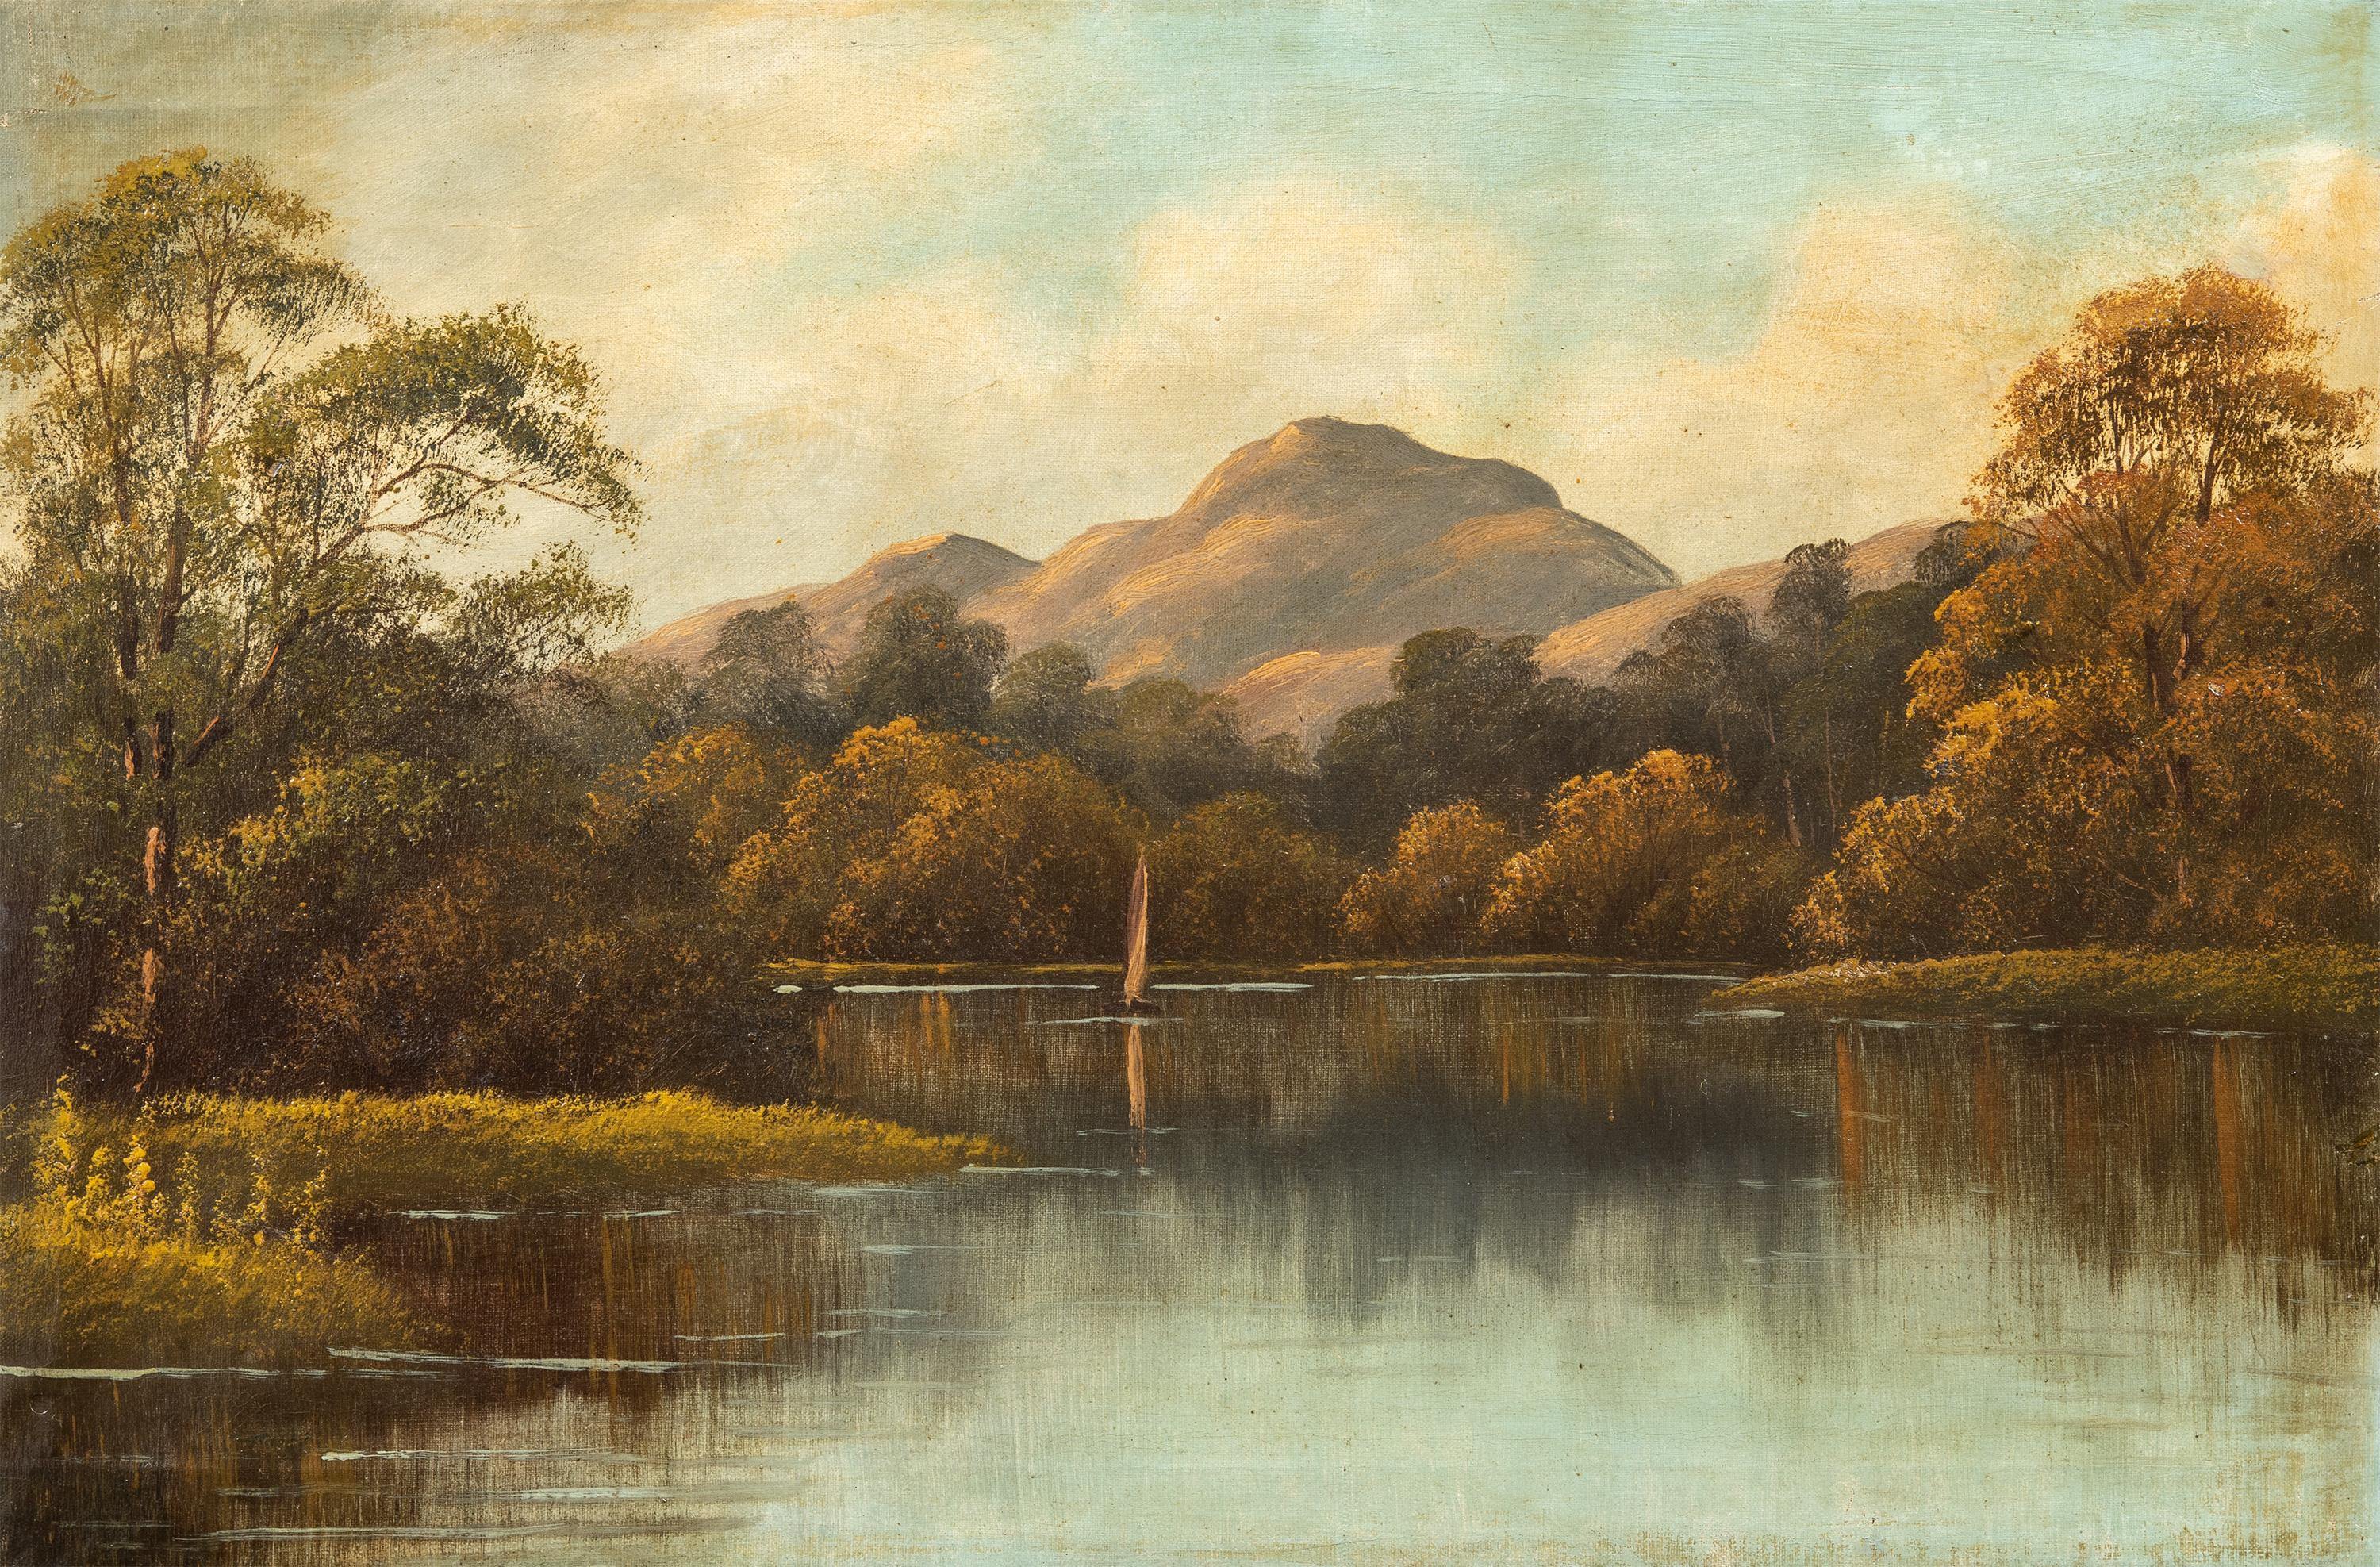 Figurative Painting Unknown - Peintre continental naturaliste - Peinture de paysage du 19e siècle - Vue sur la rivière 